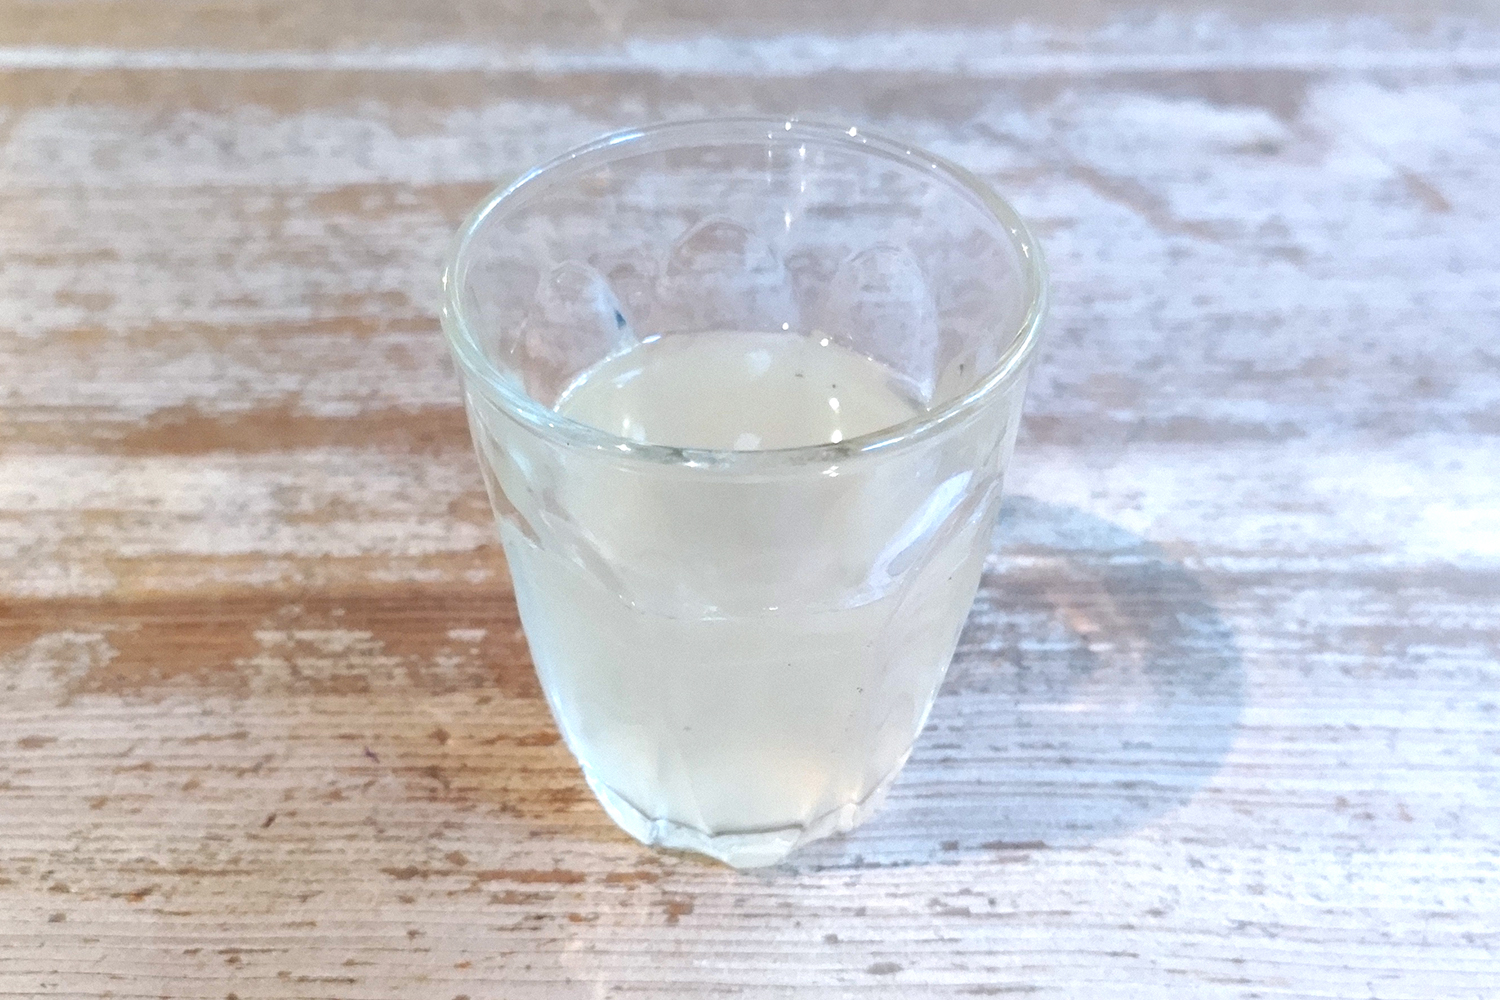 広島県産レモンを搾った自家製レモネードは、甘さ控えめ。レモンの爽やかな酸味を存分に味わえる。